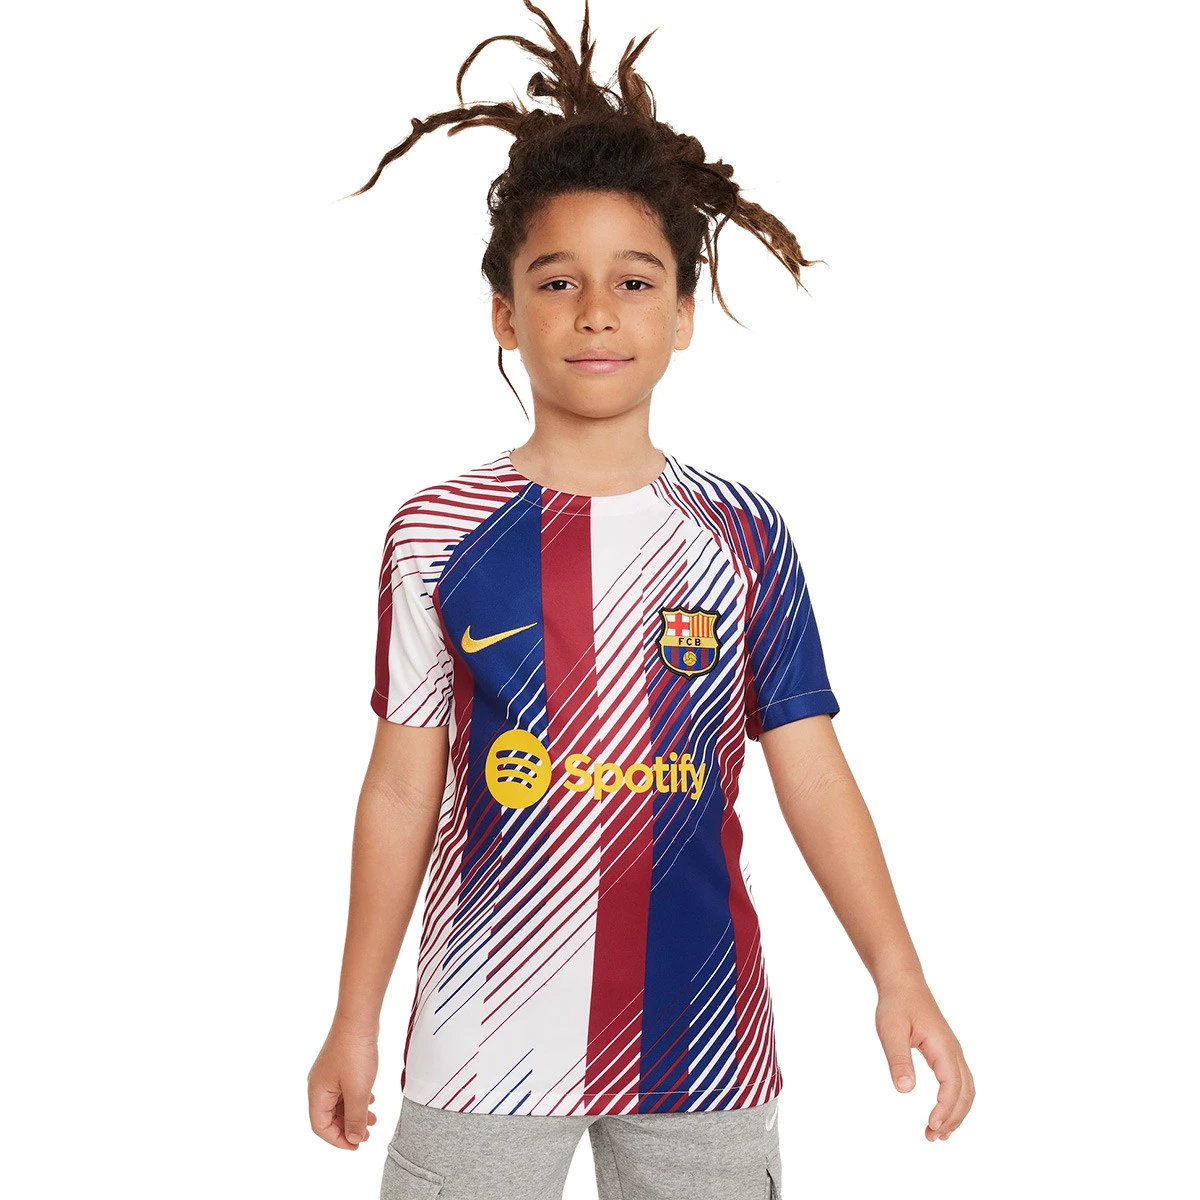 NIKE Nike Camiseta De Fútbol Fc Barcelona Niño